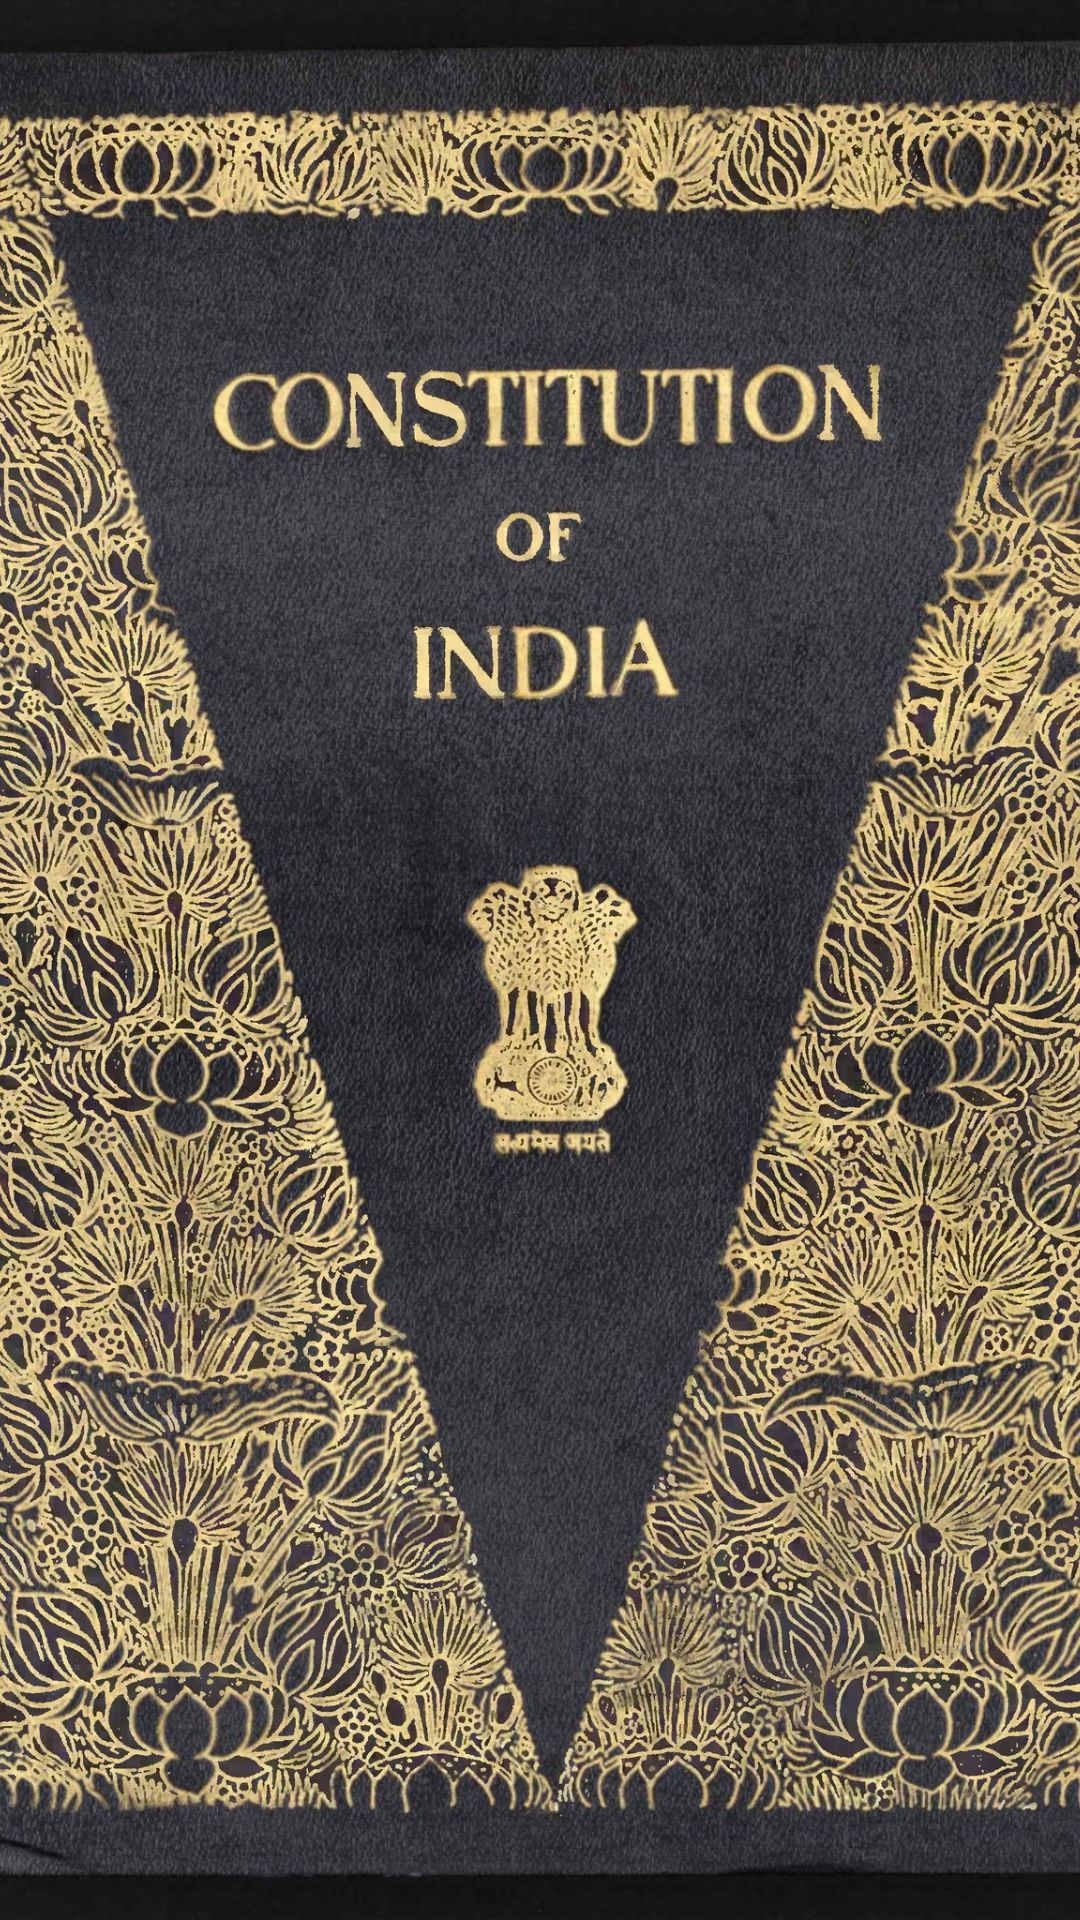 5 खास बातें जो भारतीय संविधान को दुनिया में बनाती हैं विशेष